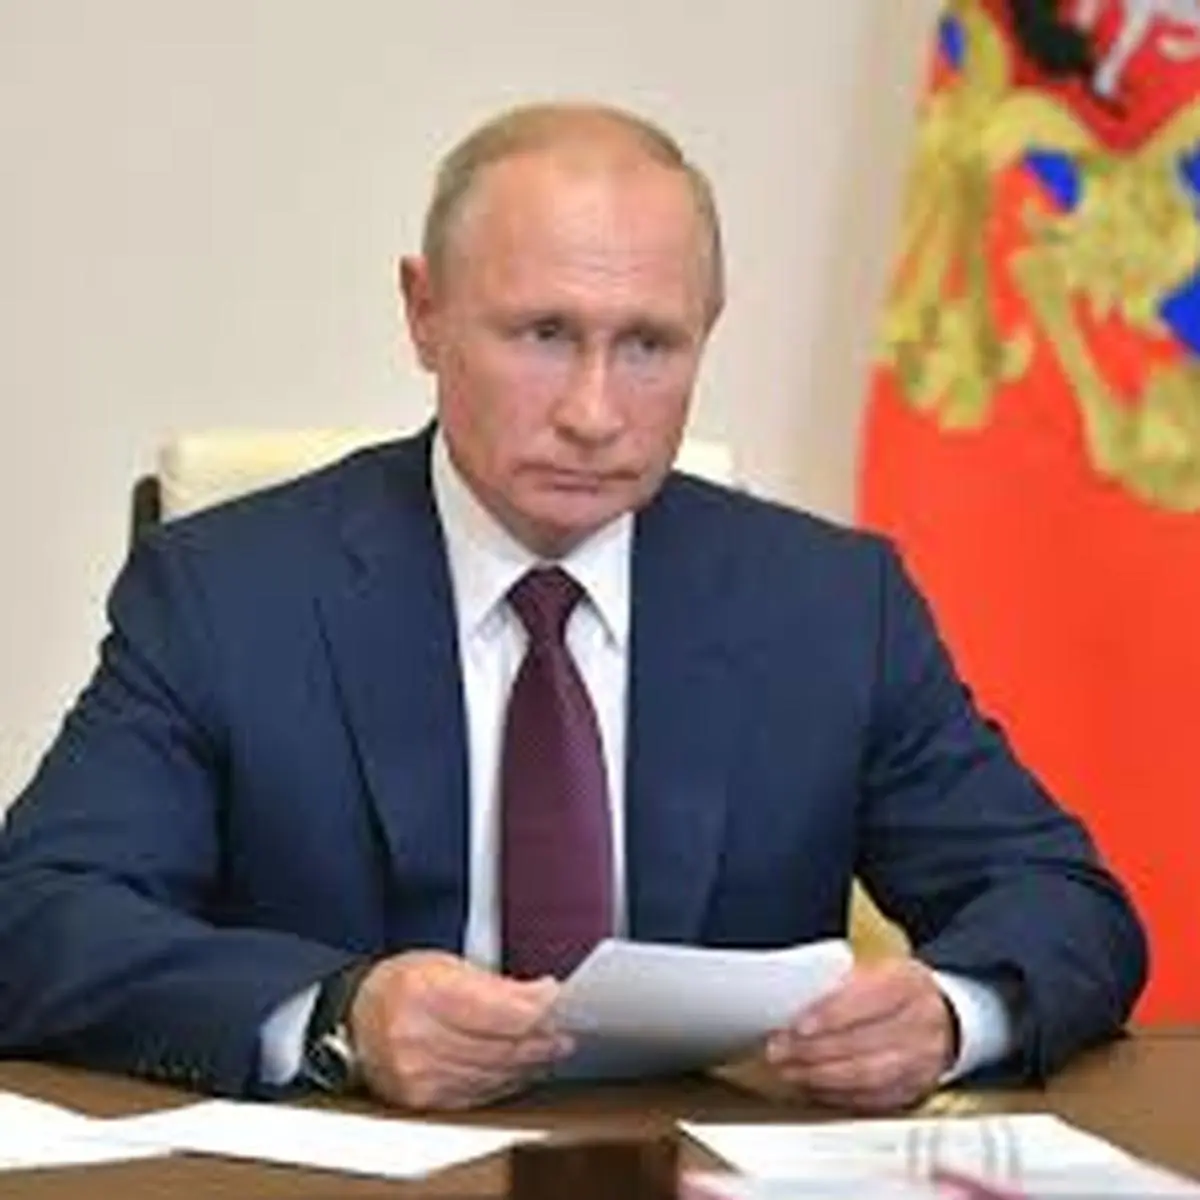 فوری: دستور پوتین برای آماده باش اتمی روسیه+ویدئو